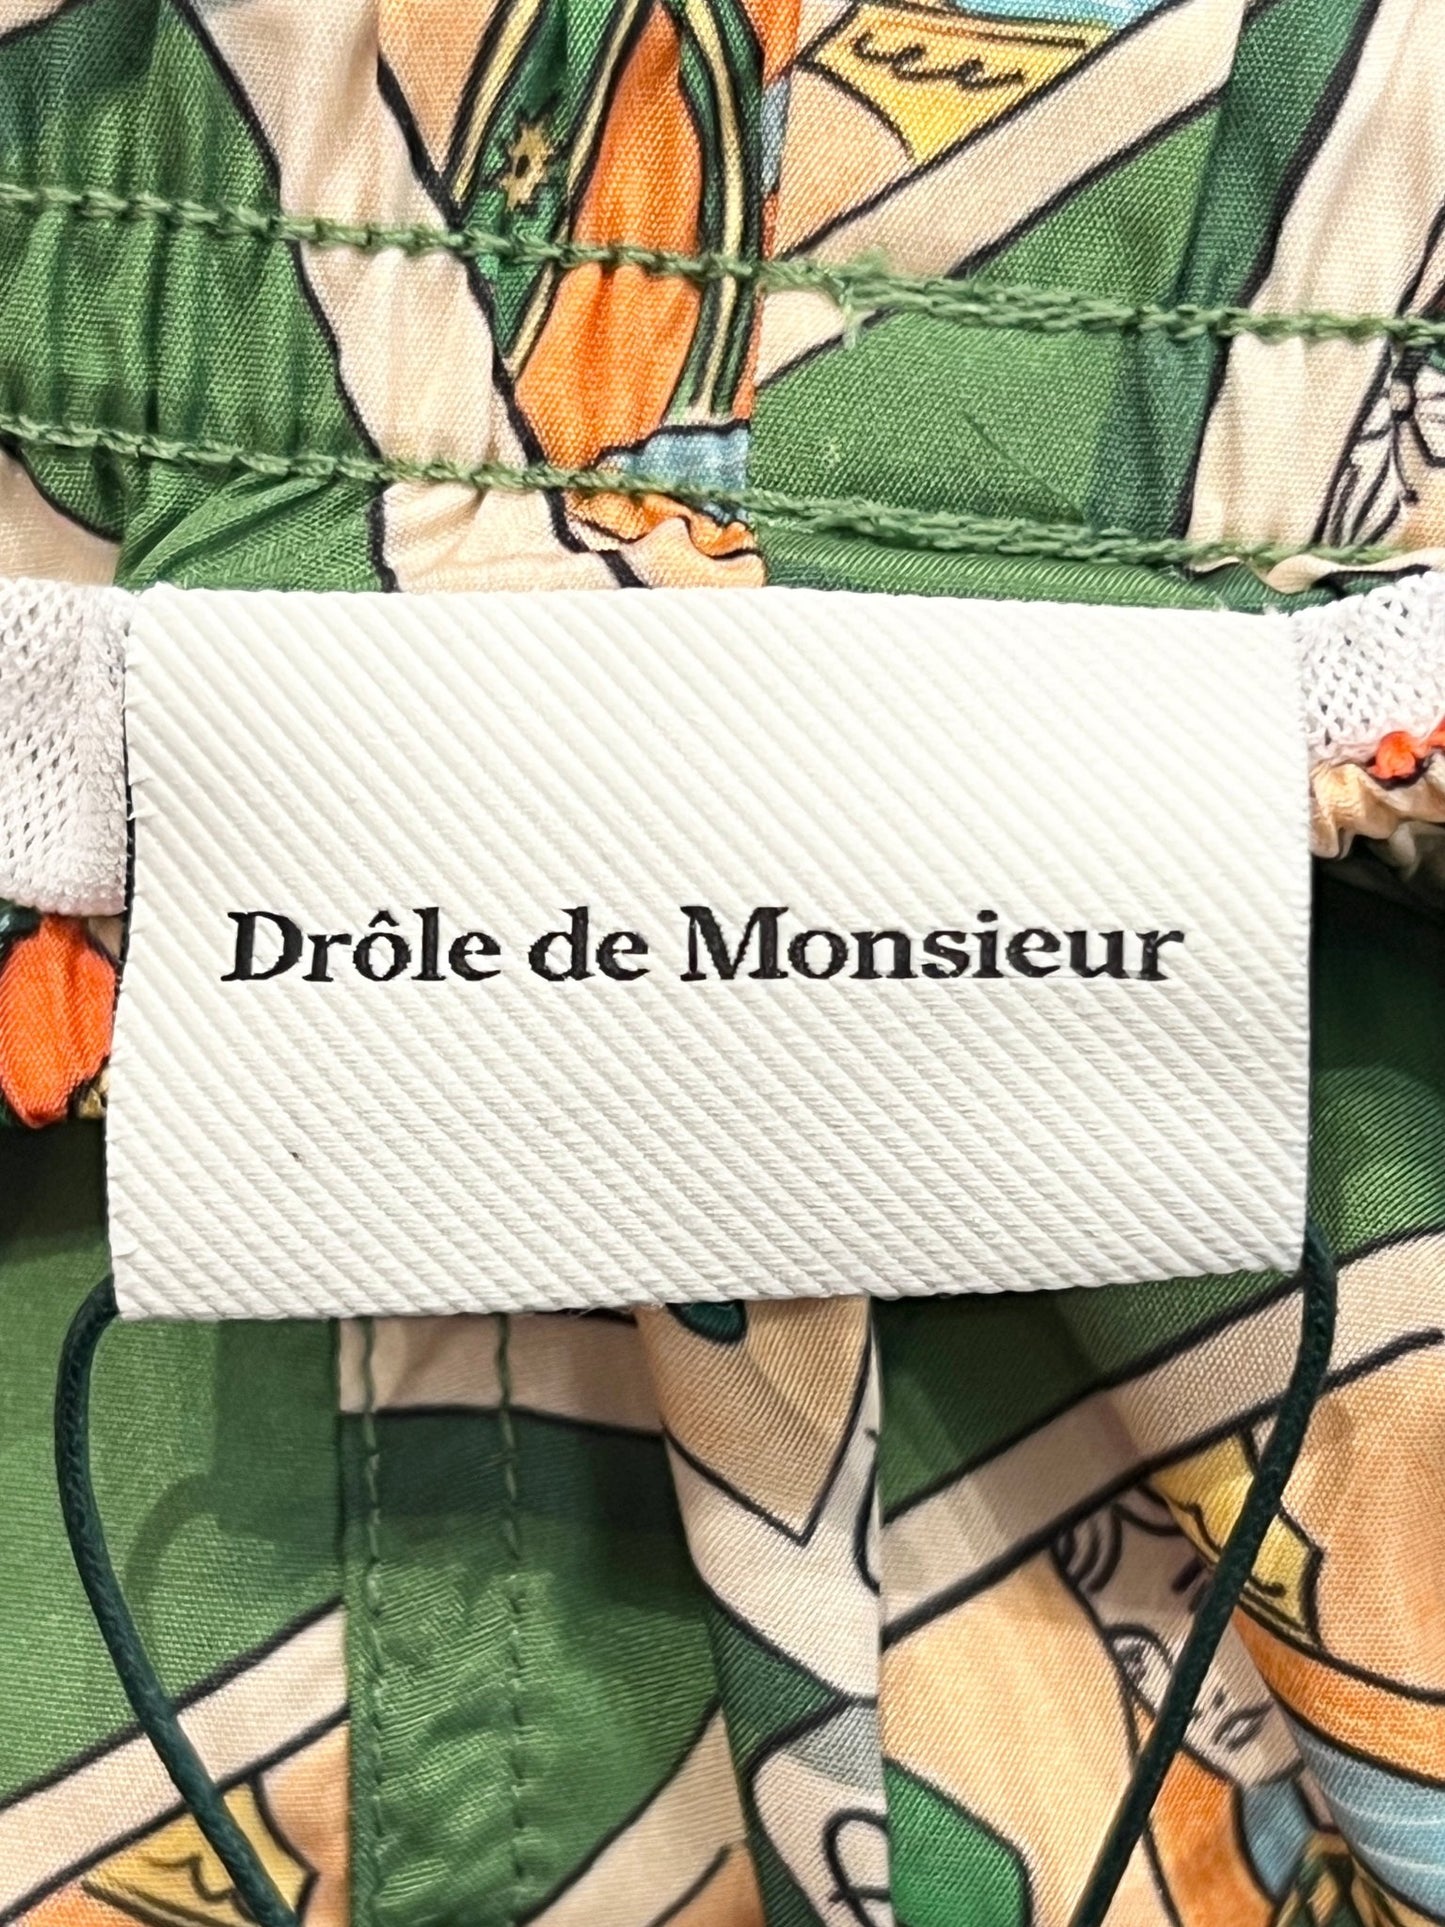 Clothing label with the text "DROLE DE MONSIEUR" attached to mid-length swim shorts featuring a card game print. (Product Name: DROLE DE MONSIEUR D-BS141-PL136 LE SHORT PLAGE JEU DE CARTES GN)